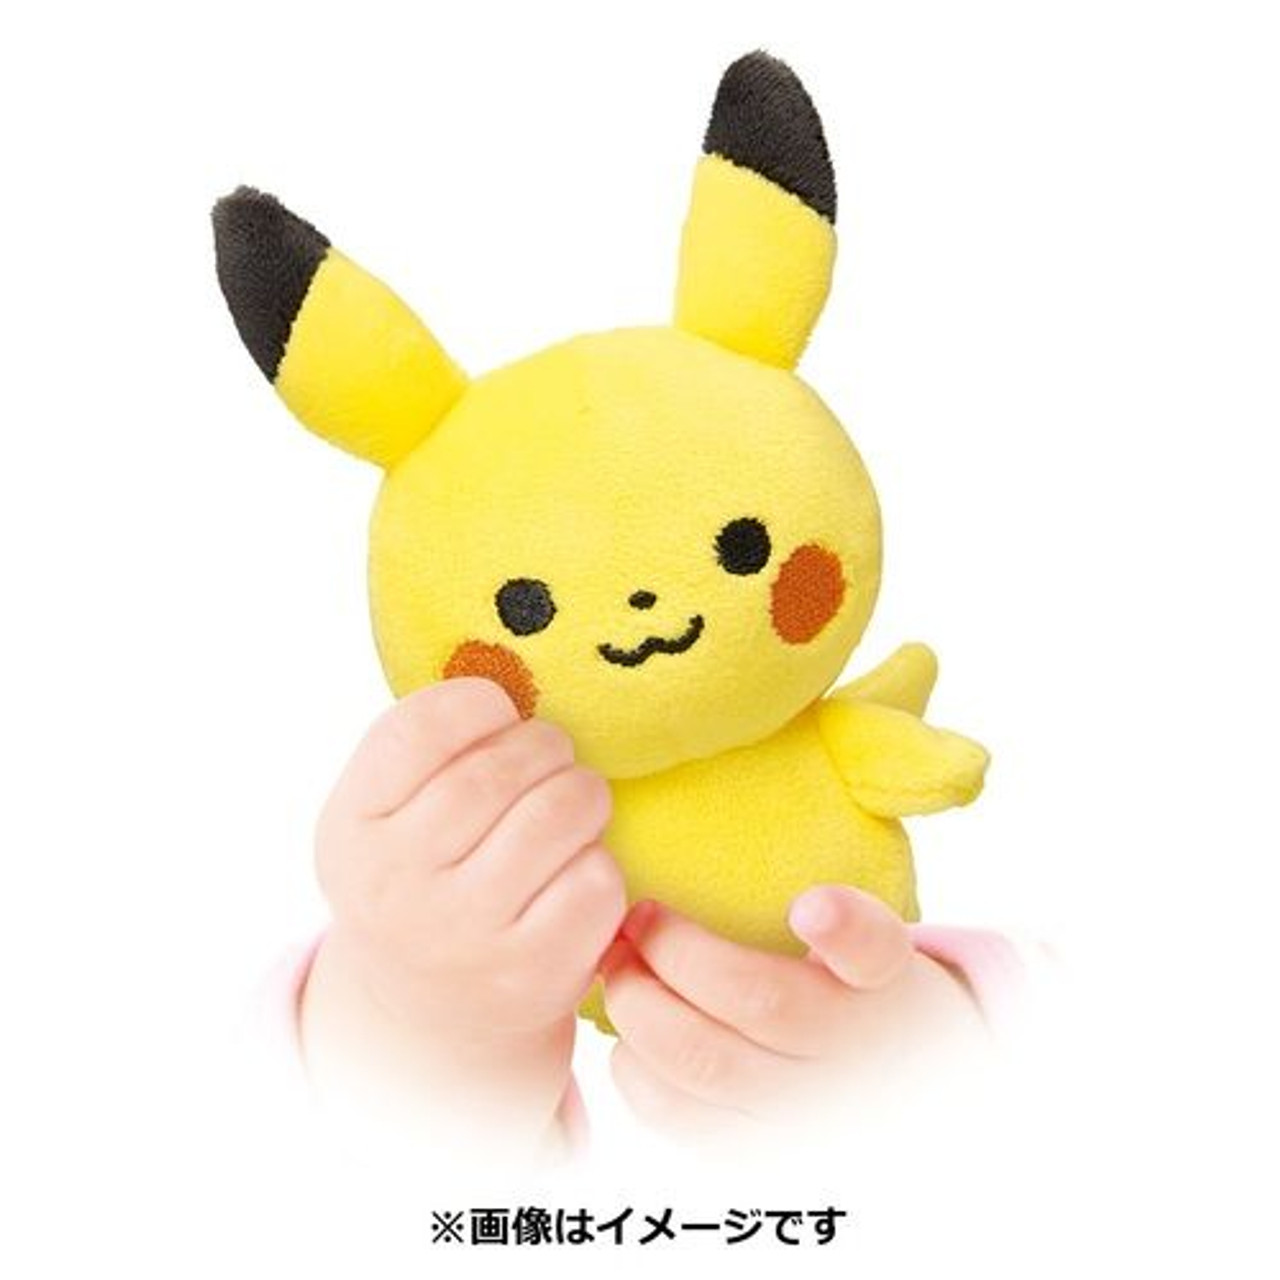 Cappello Pokemon Pikachu Plush - SB276317POK, acquista su Hidrobrico